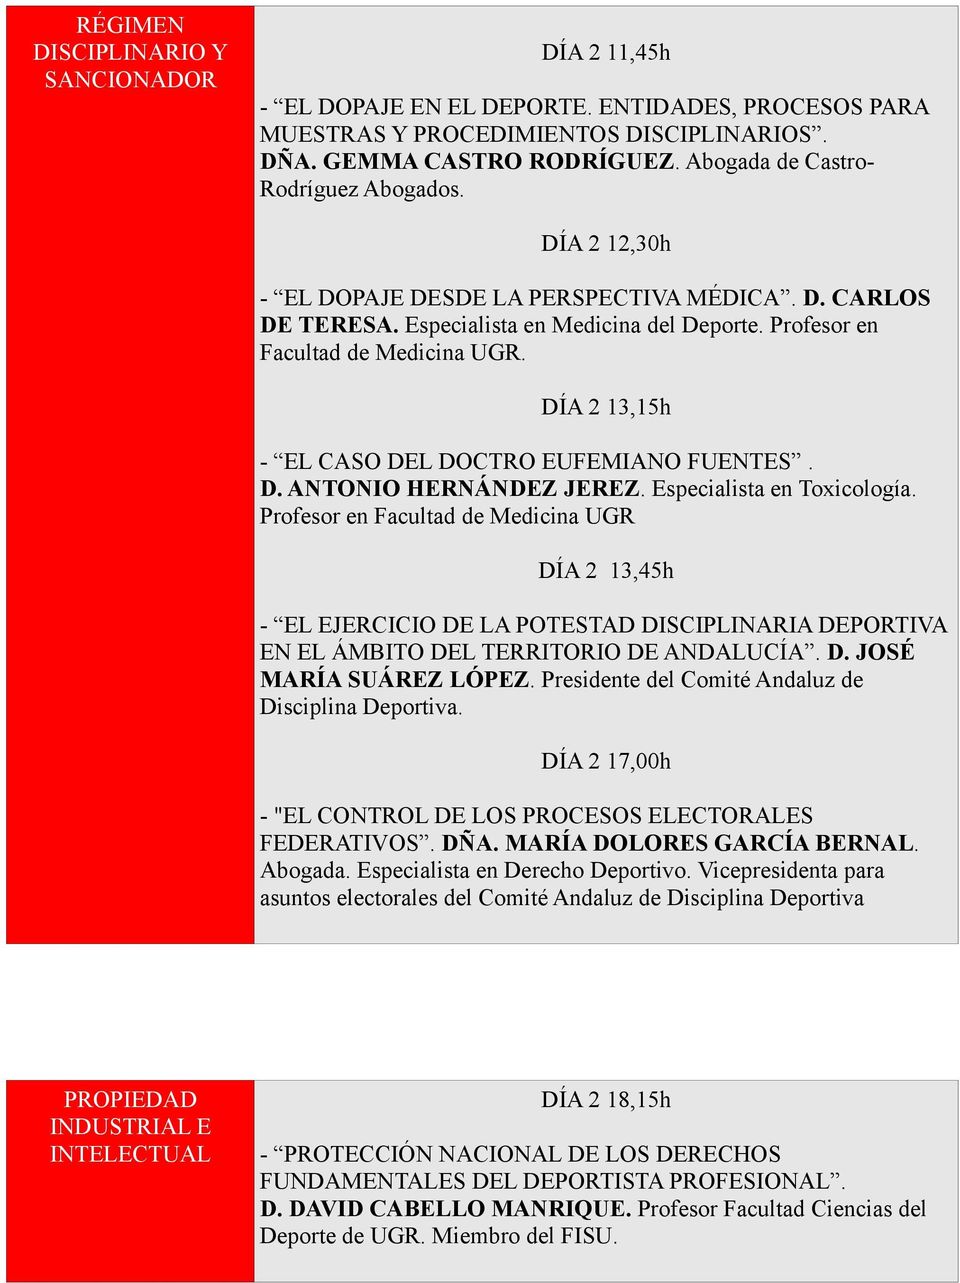 DÍA 2 13,15h - EL CASO DEL DOCTRO EUFEMIANO FUENTES. D. ANTONIO HERNÁNDEZ JEREZ. Especialista en Toxicología.